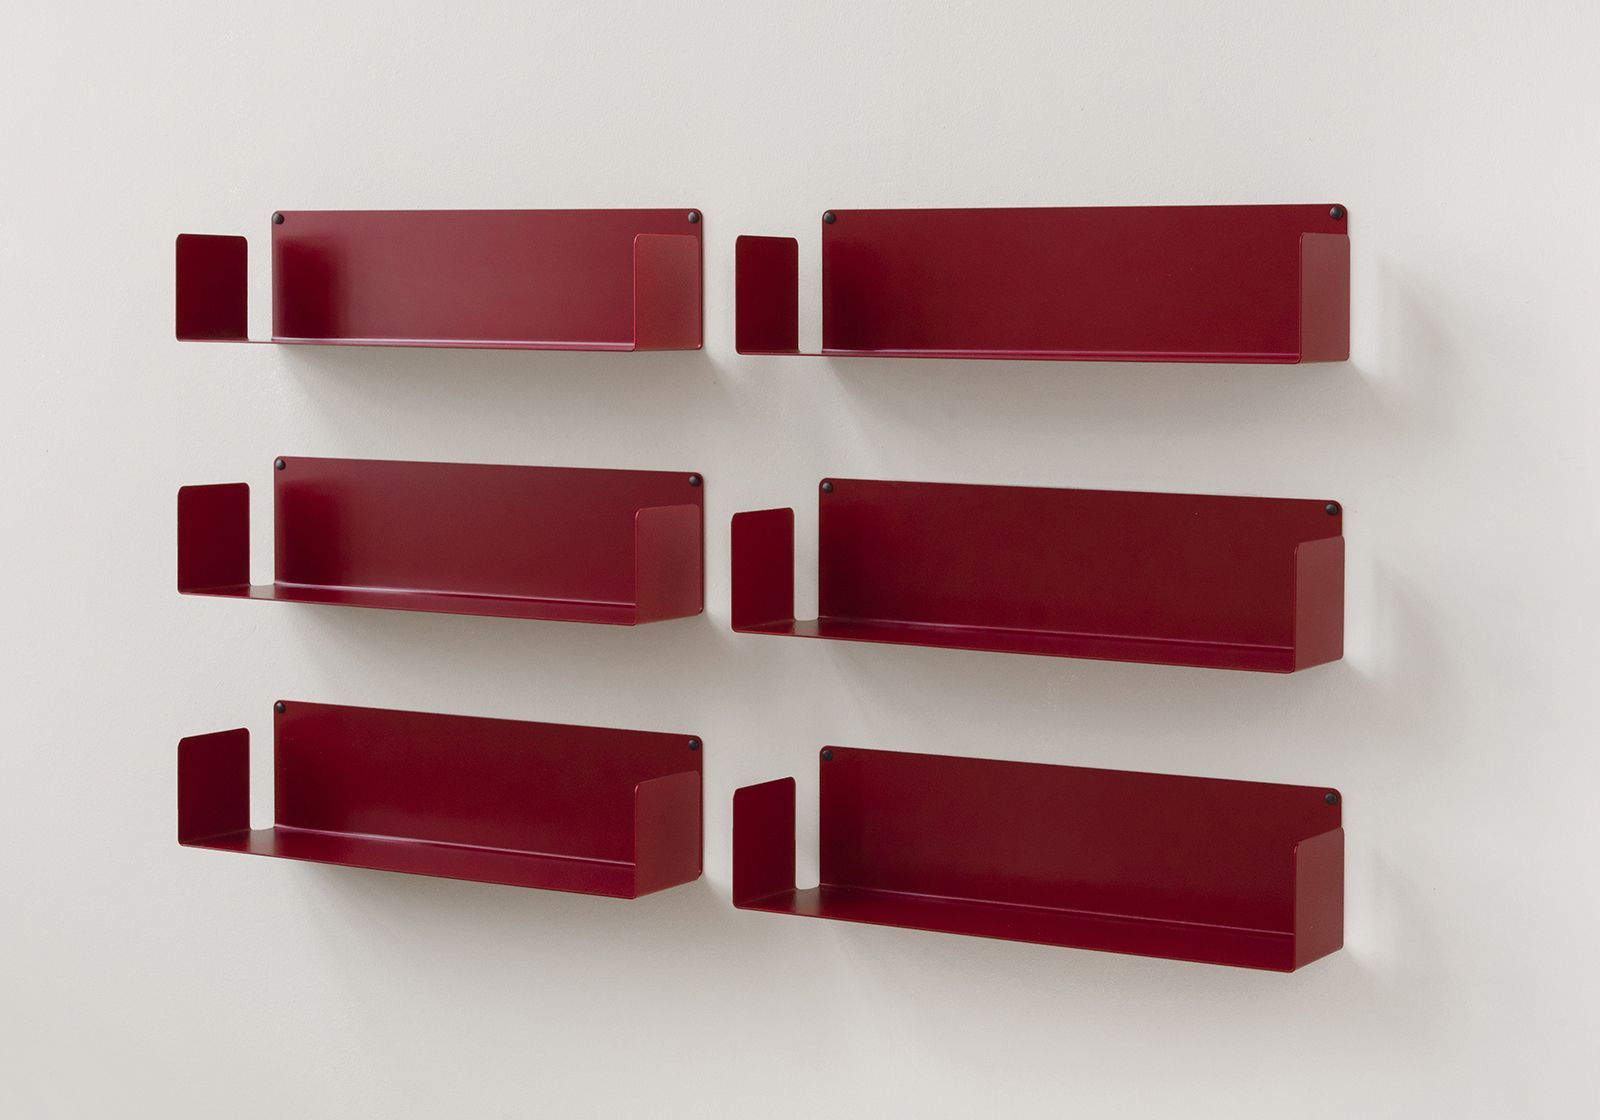 Floating shelves  "U" - 60 cm - Set of 6